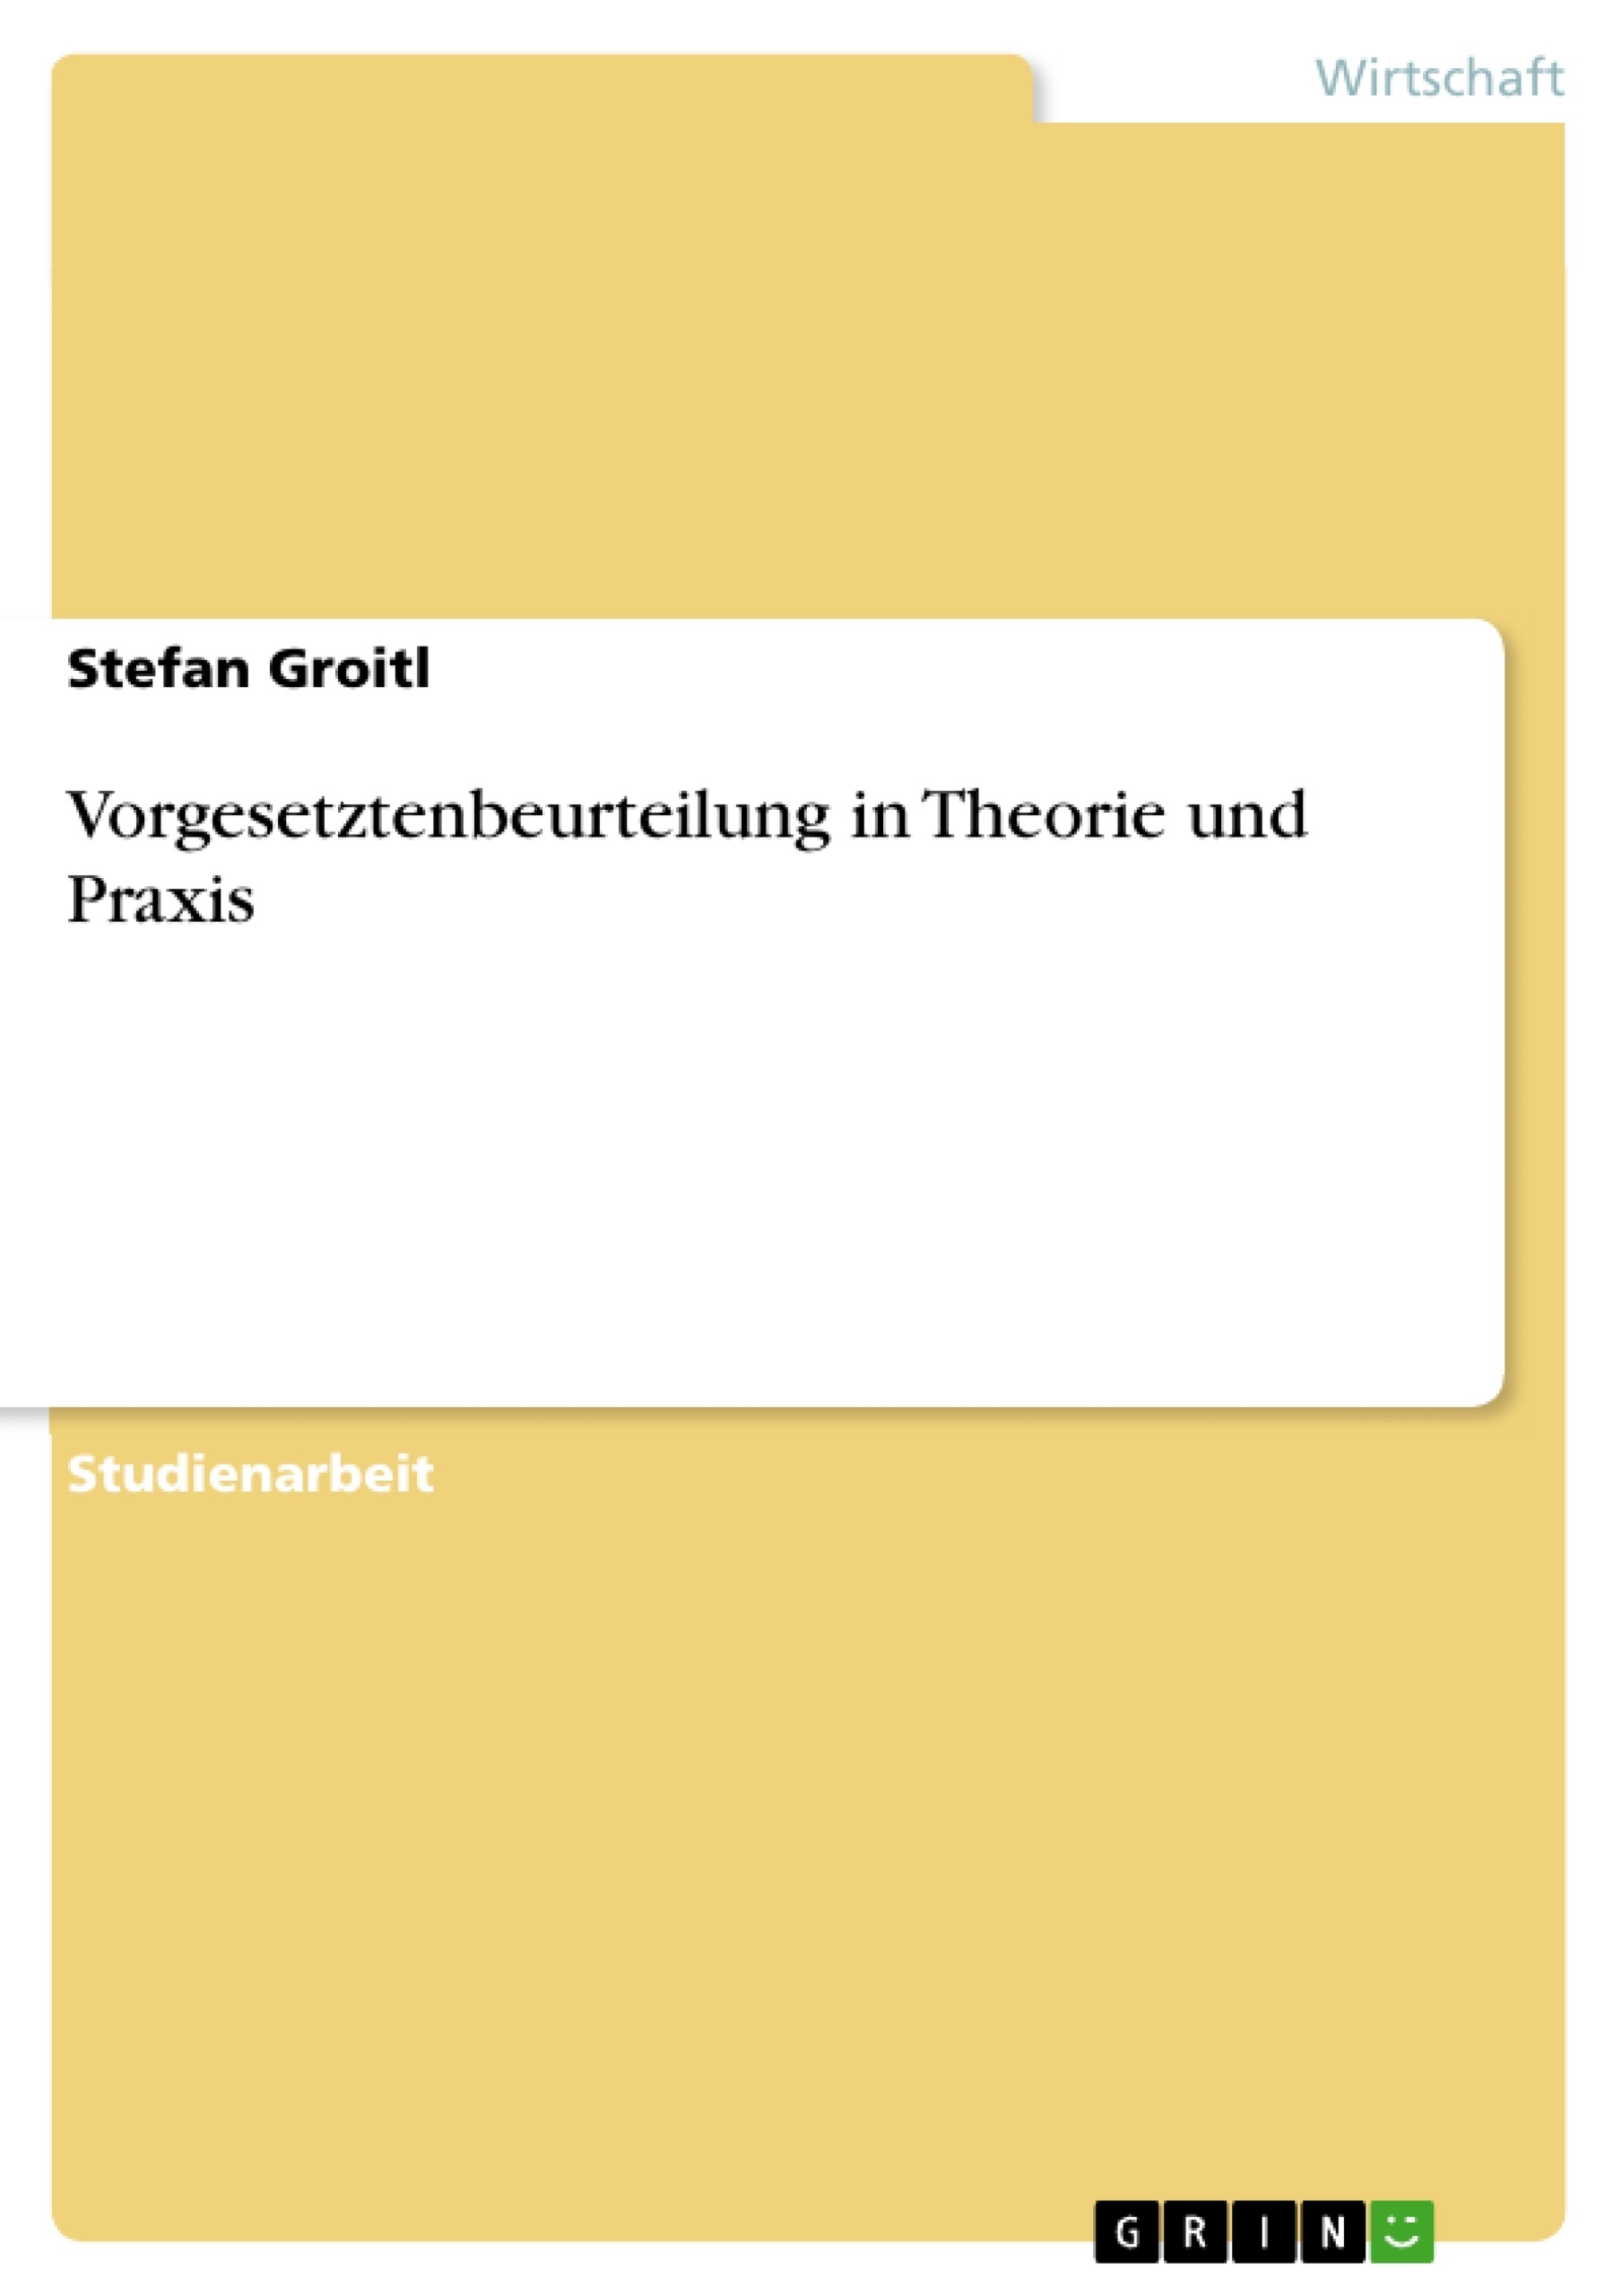 Titre: Vorgesetztenbeurteilung in Theorie und Praxis